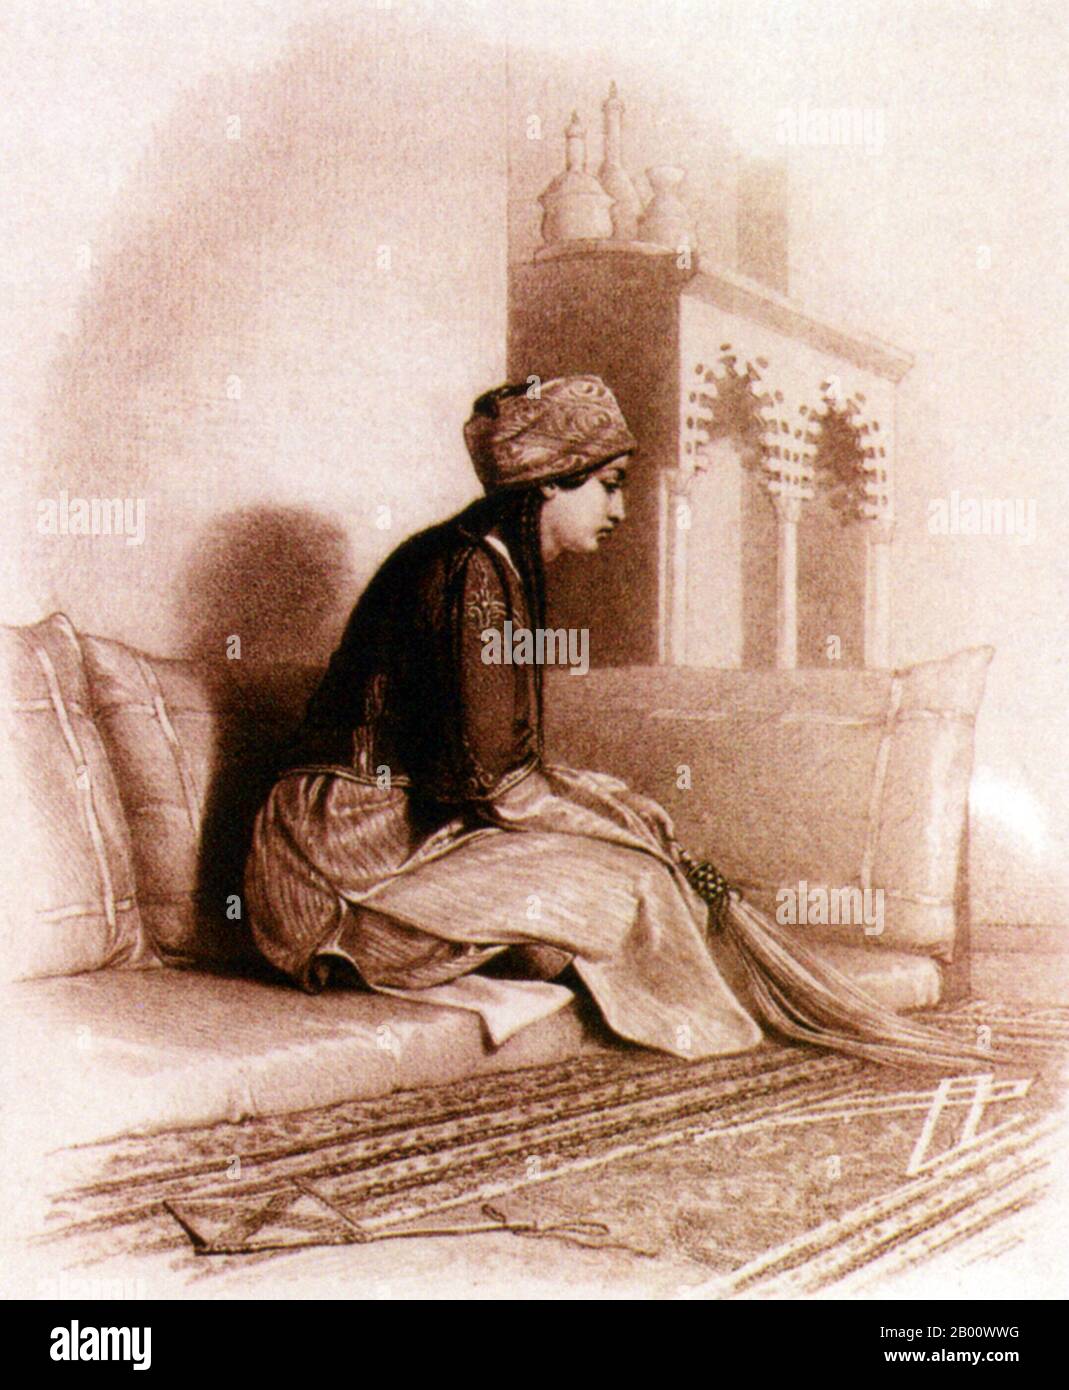 Egitto: Un disegno del 1830 di una donna egiziana da Edward W. Lane (1801-1876). Alcuni dicono che il ritratto sia, in realtà, la moglie greca di Lane, Nefeeseh, che ha acquistato in un mercato degli schiavi al Cairo. Edward William Lane (1801-1876) è stato un orientalista britannico, traduttore e studioso arabo che visse nel Cairo ottomano dal 1825 al 28. Così affascinato fu con l'Egitto, si vestì come un turco ottomano e passò molto tempo a disegnare le strade secondarie del Cairo. Al suo ritorno in Inghilterra tradusse il romanzo ‘notti arabe’ [‘1001 notti’] e le ‘Selezioni del Corano’. Foto Stock